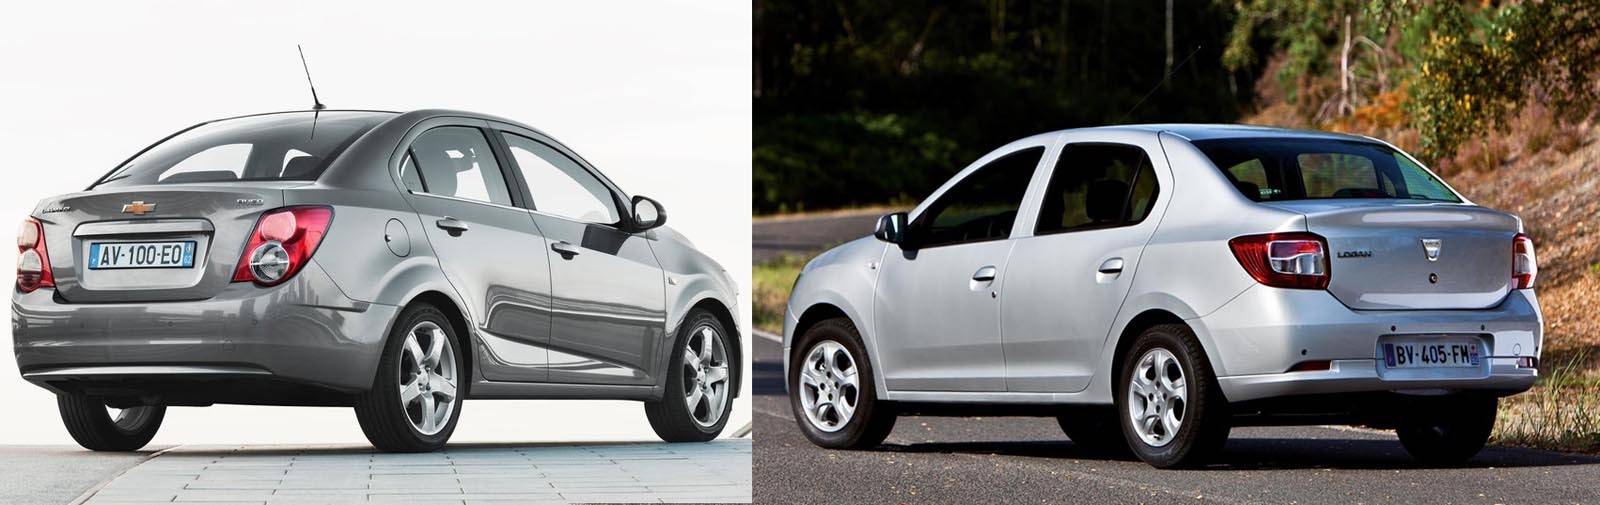 Что лучше: Chevrolet Lacetti или Renault Logan